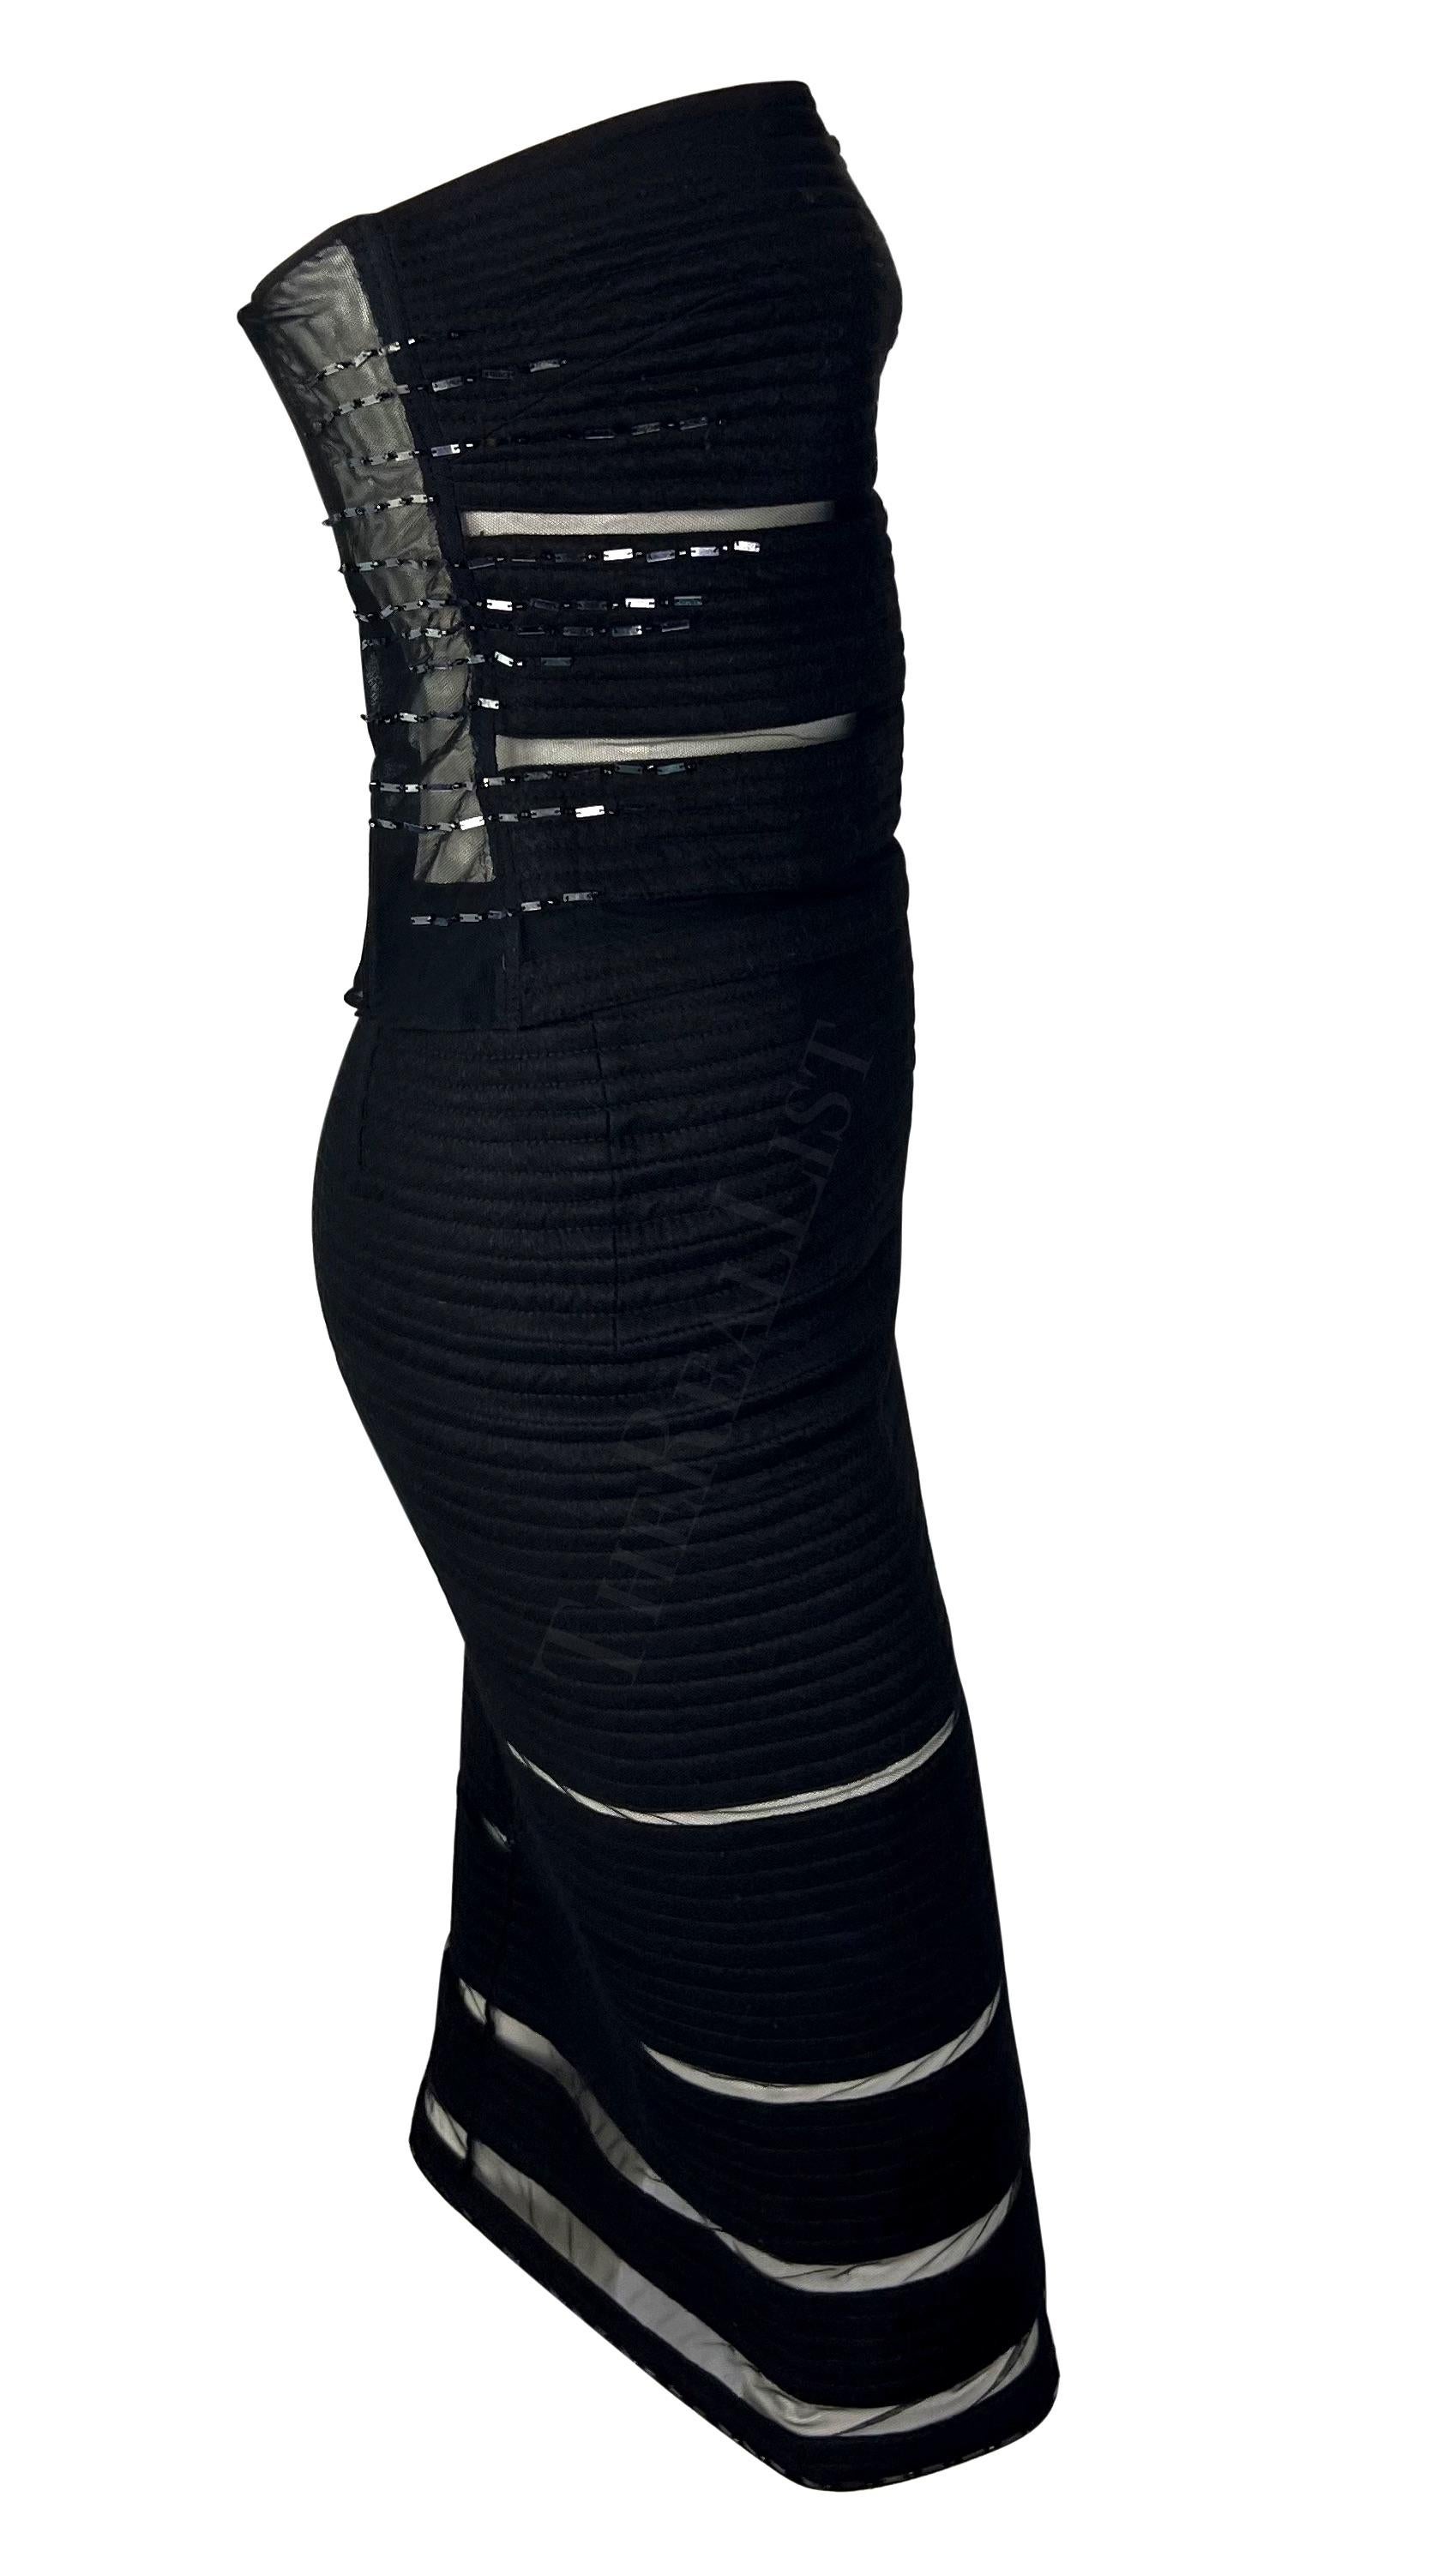 Wir präsentieren ein fabelhaftes schwarzes gestepptes Gianni Versace Rockset, entworfen von Donatella Versace. Dieses Set aus dem Jahr 1999 besteht aus einem Bleistiftrock und einem passenden ärmellosen Oberteil. Sowohl das Oberteil als auch der